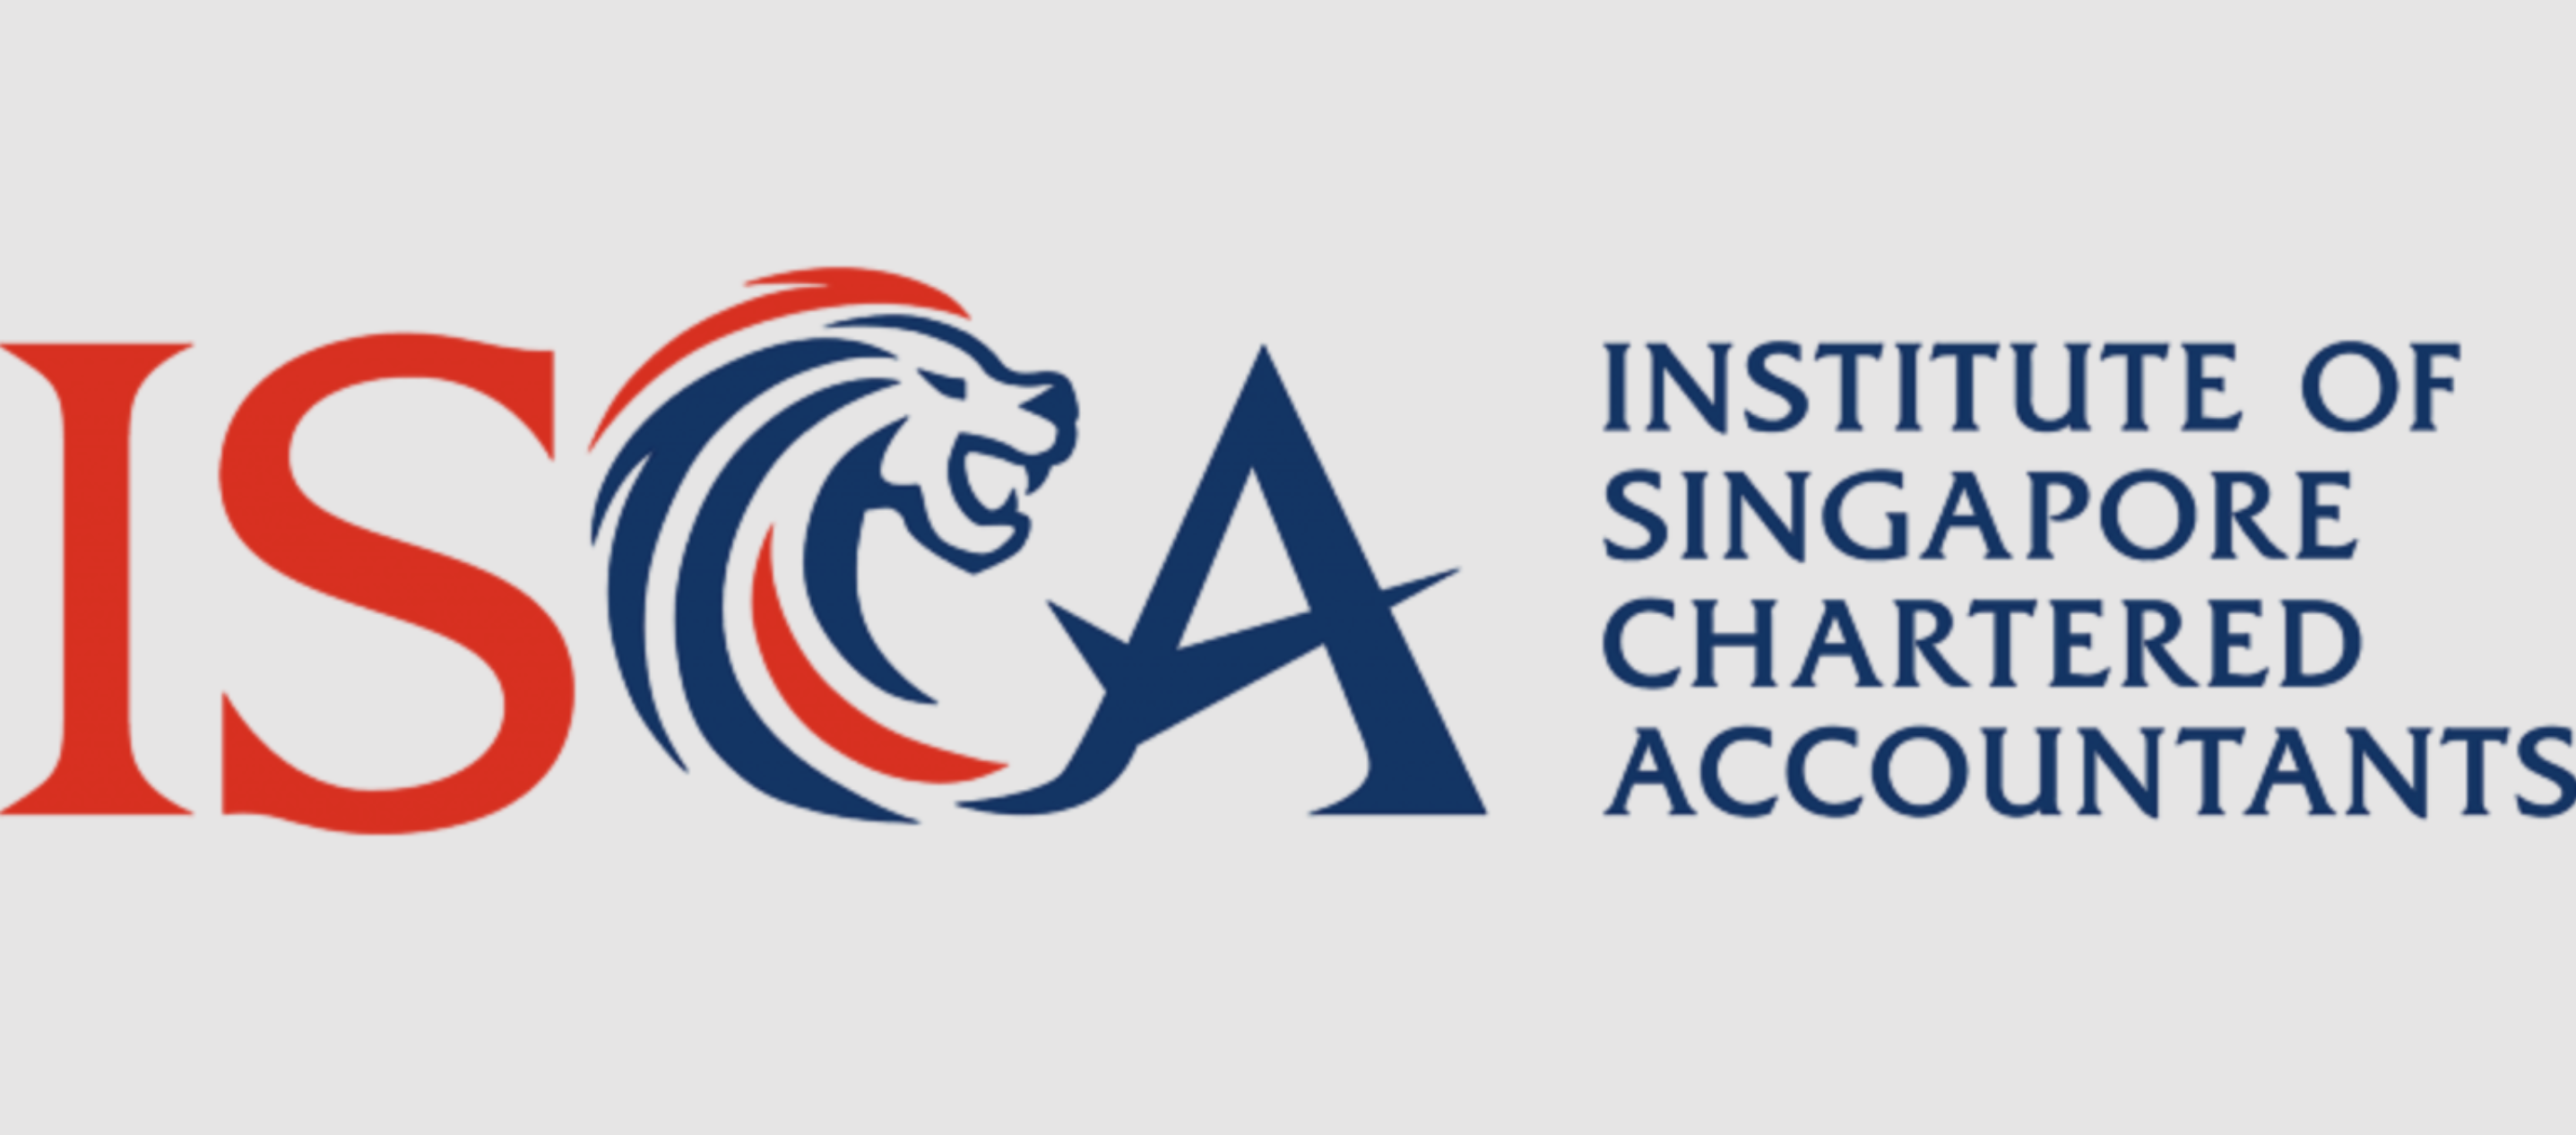 ISCA Singapore